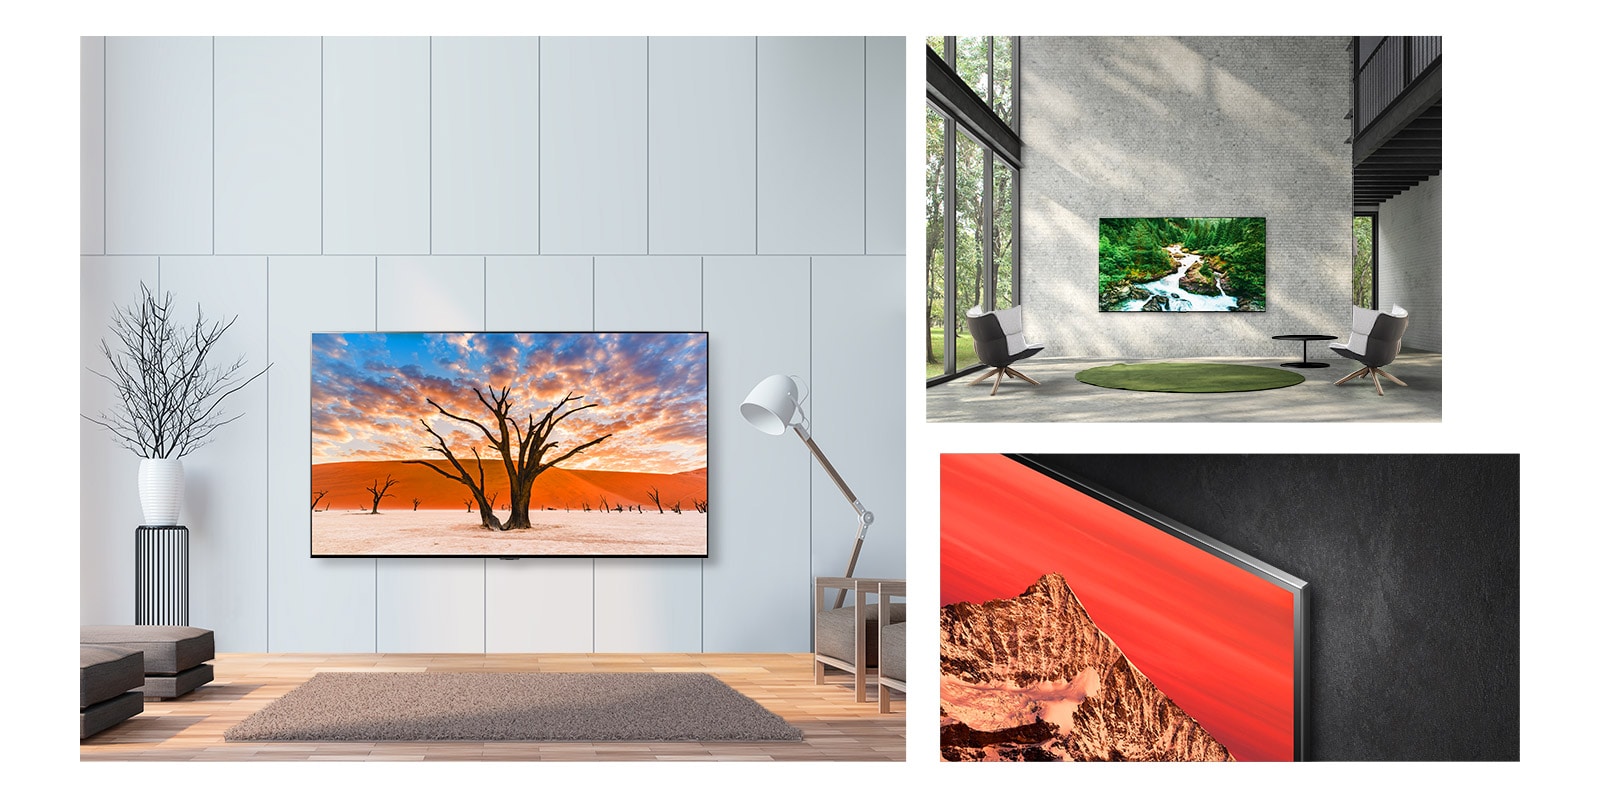 Trije prizori tankega in velikega LG QNED Mini LED TV visijo na steni kot umetniško delo.